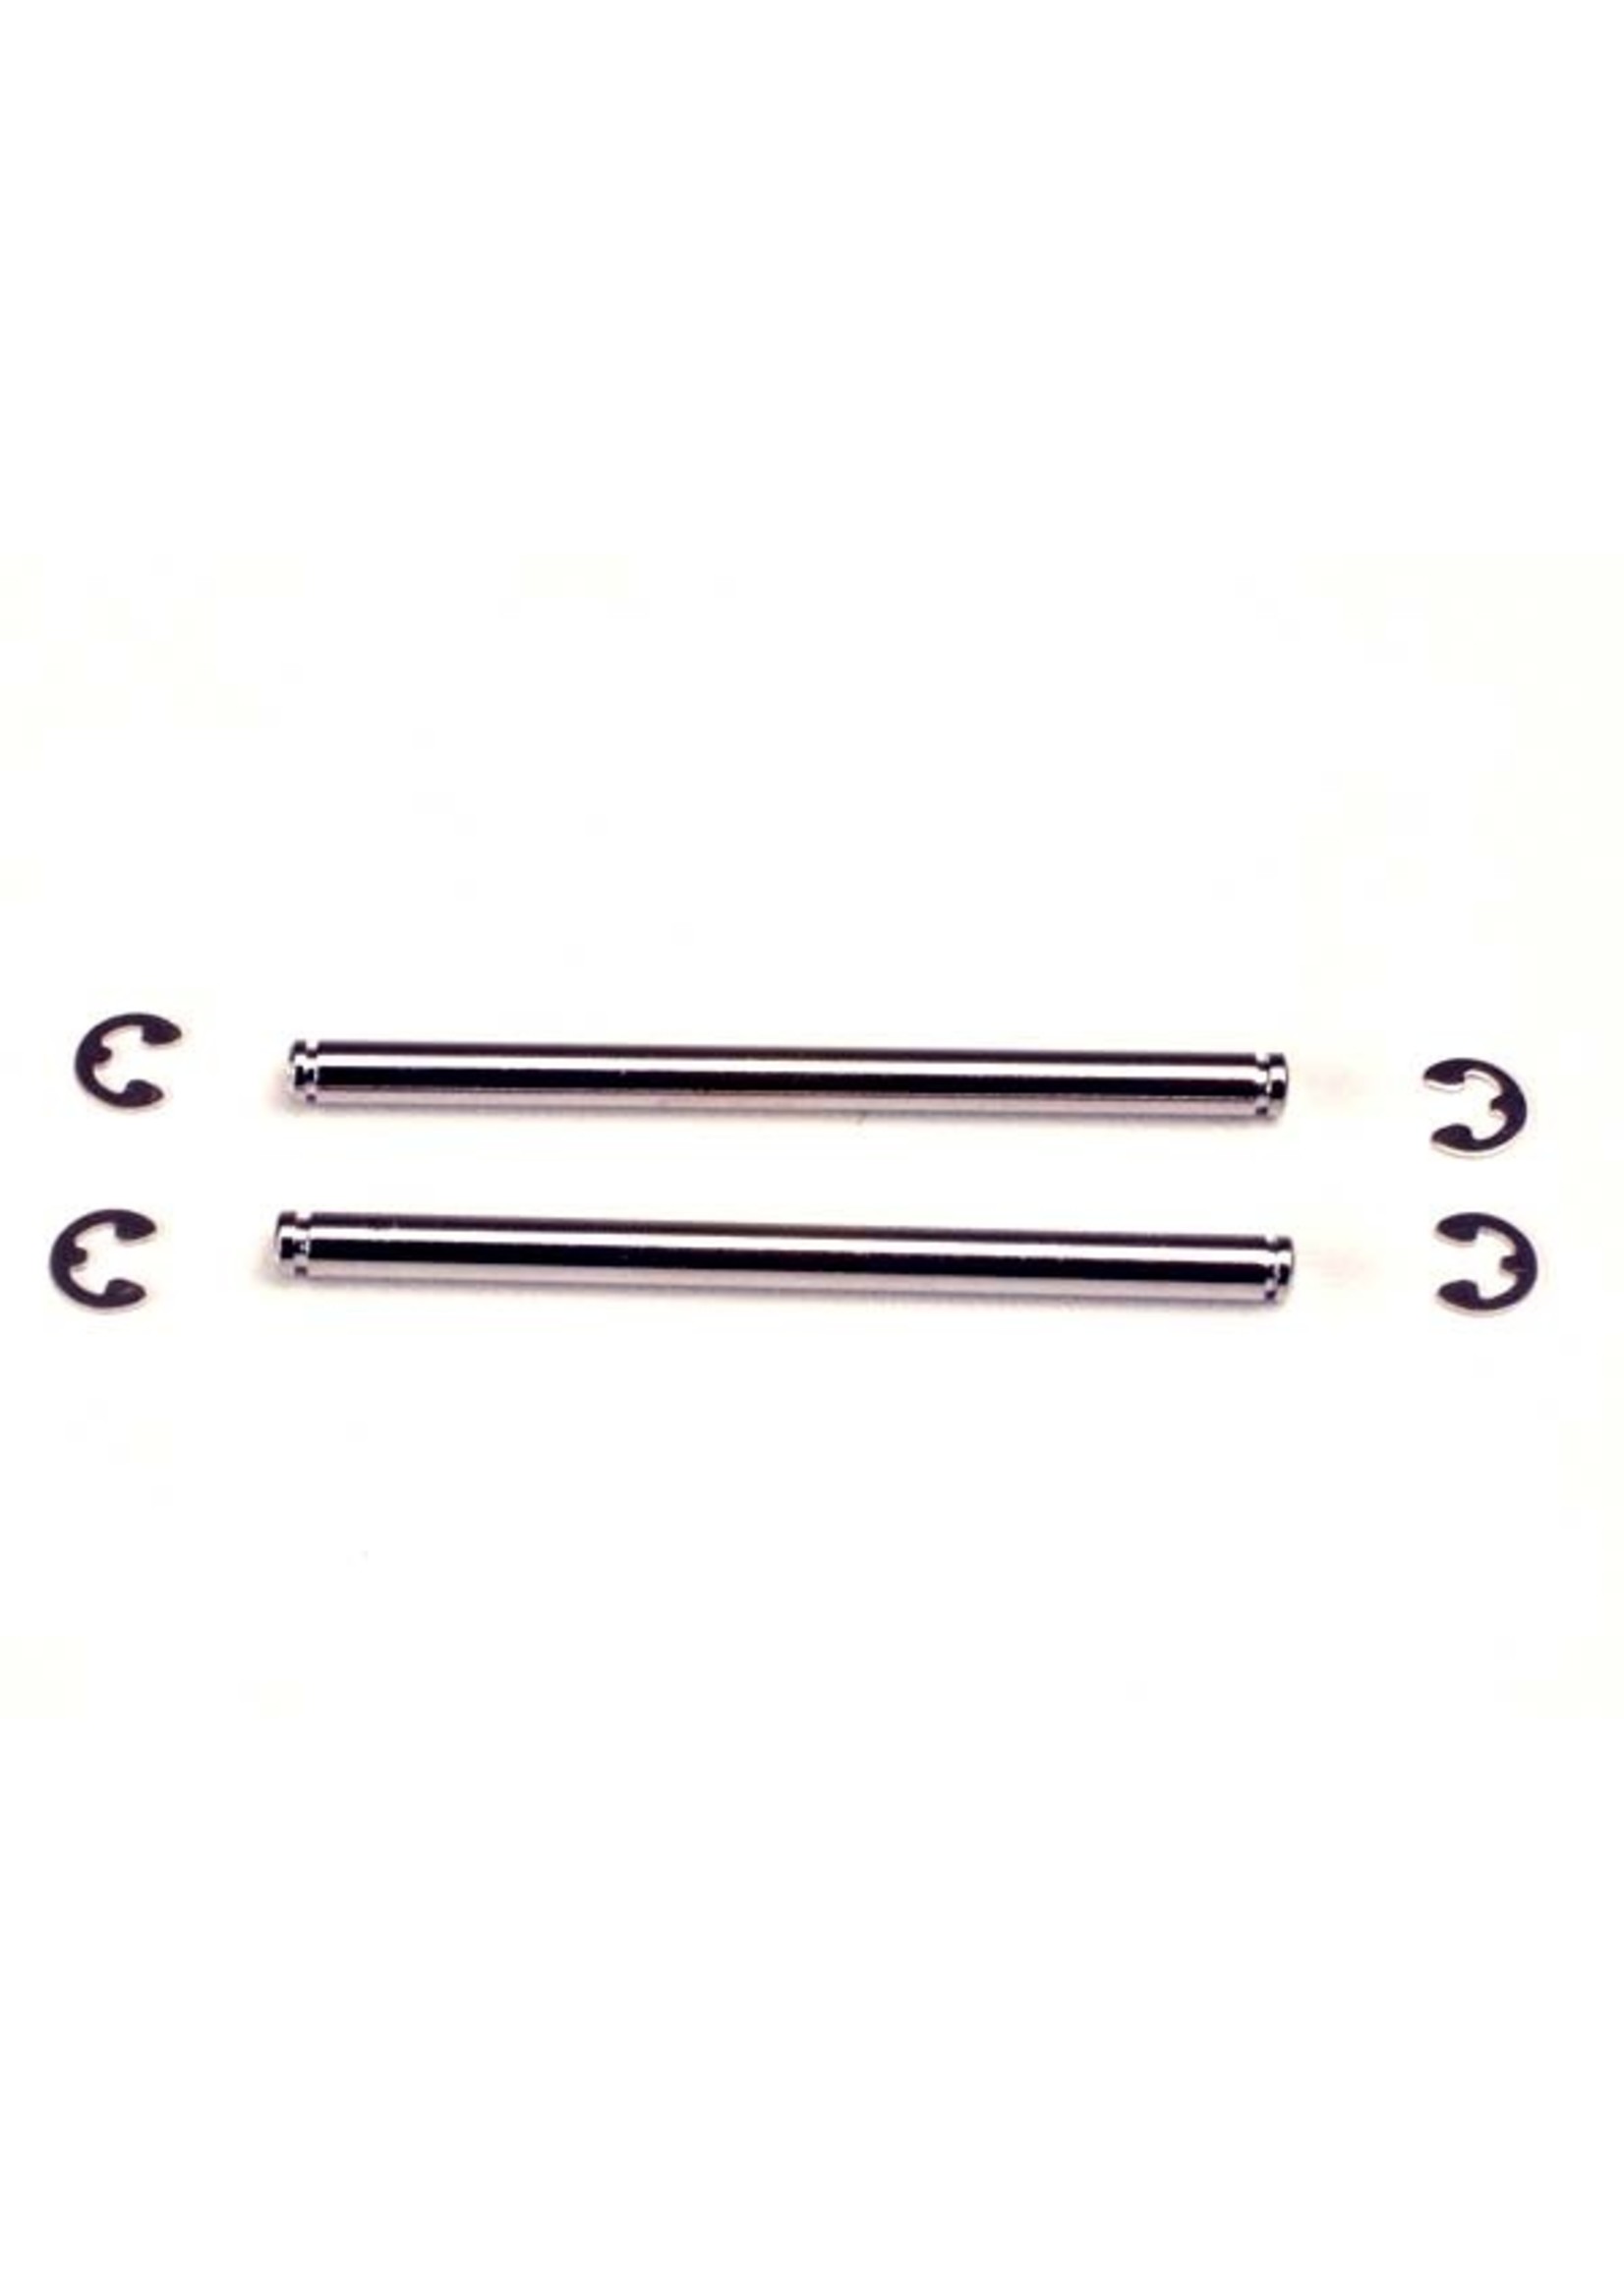 Traxxas 2639 - 48mm Suspension Pins - Hard Chrome